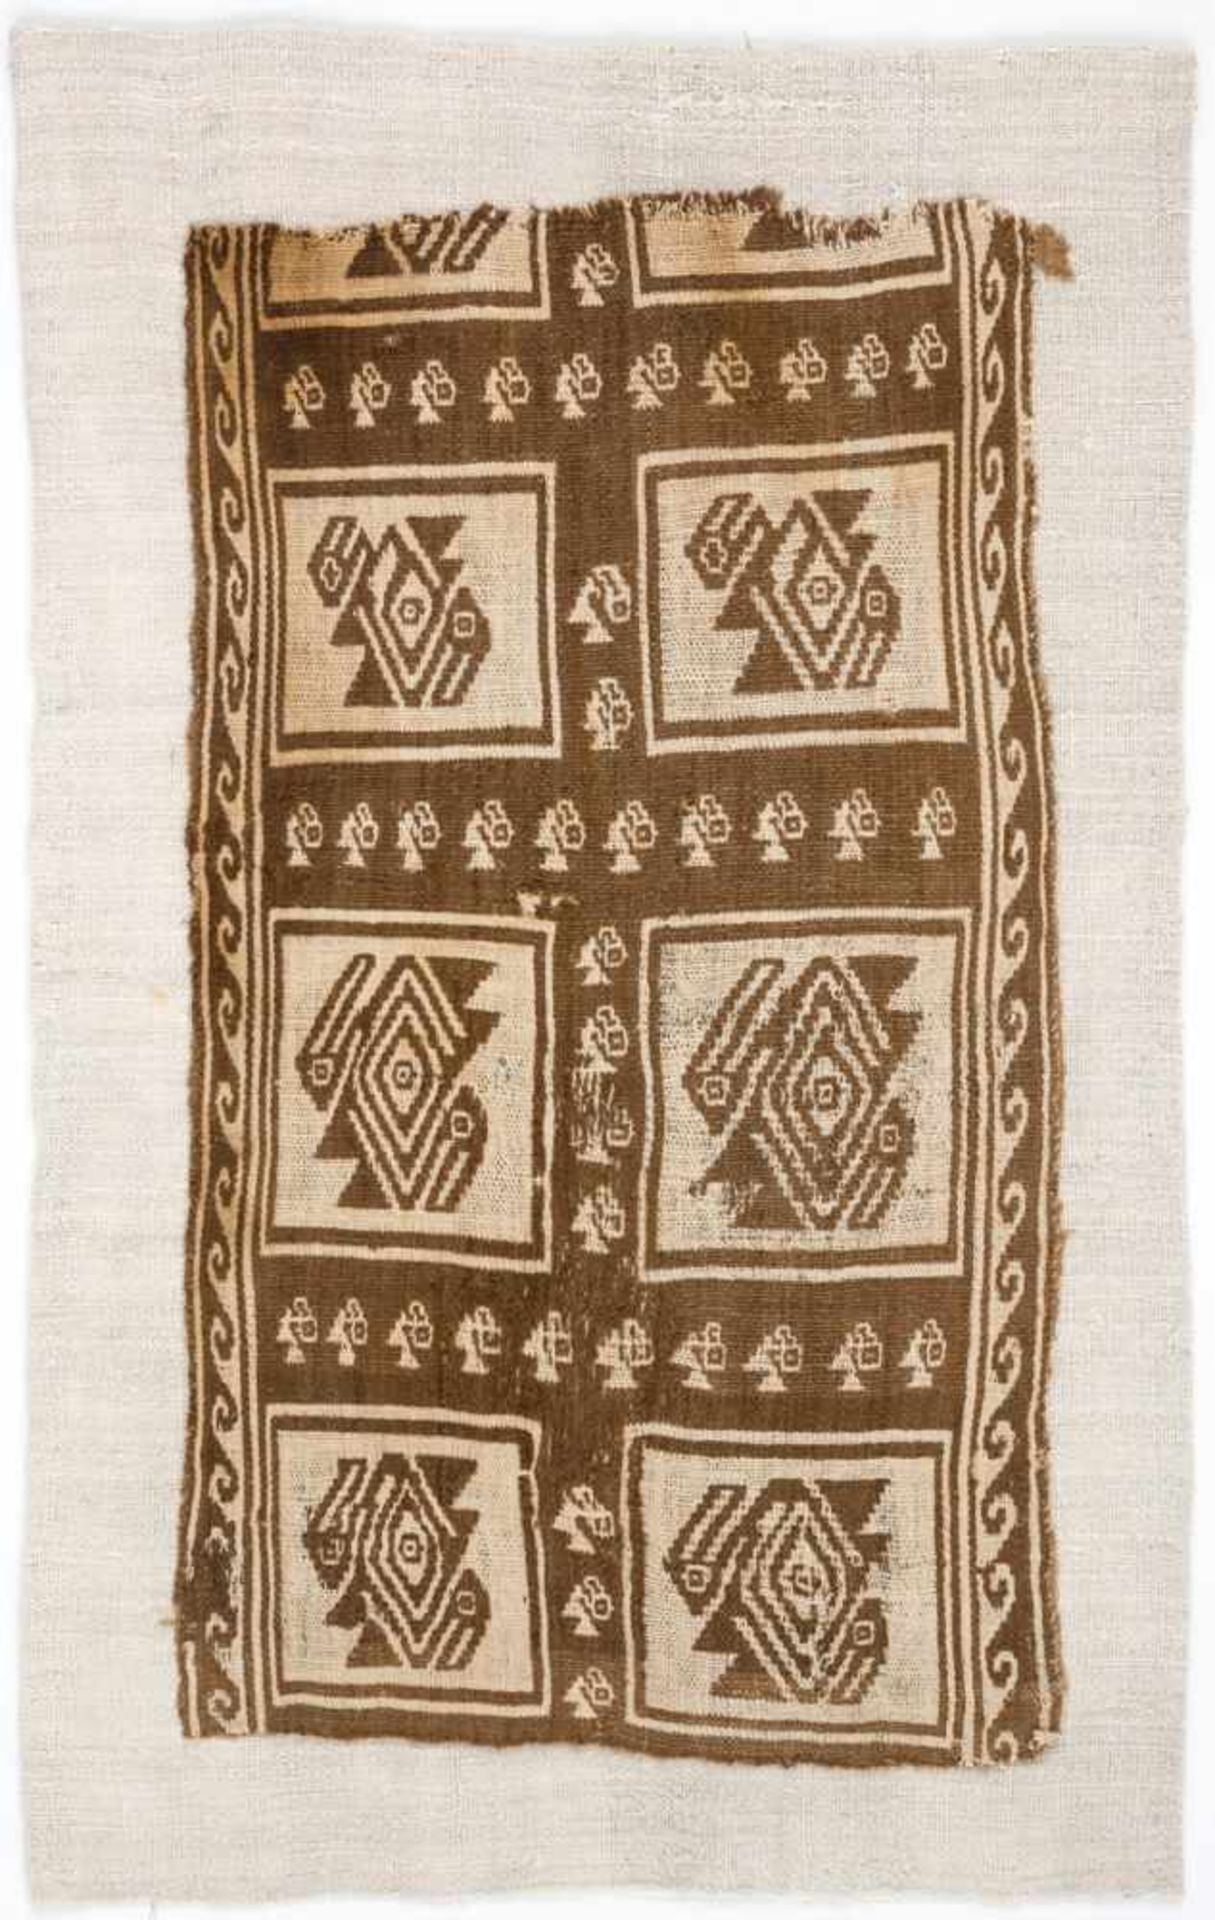 Altperuanisches TextilfragmentBaumwolleca. 50 x 28 cmProvenienz: Sammlung Dr. Dorothea Hentschel /